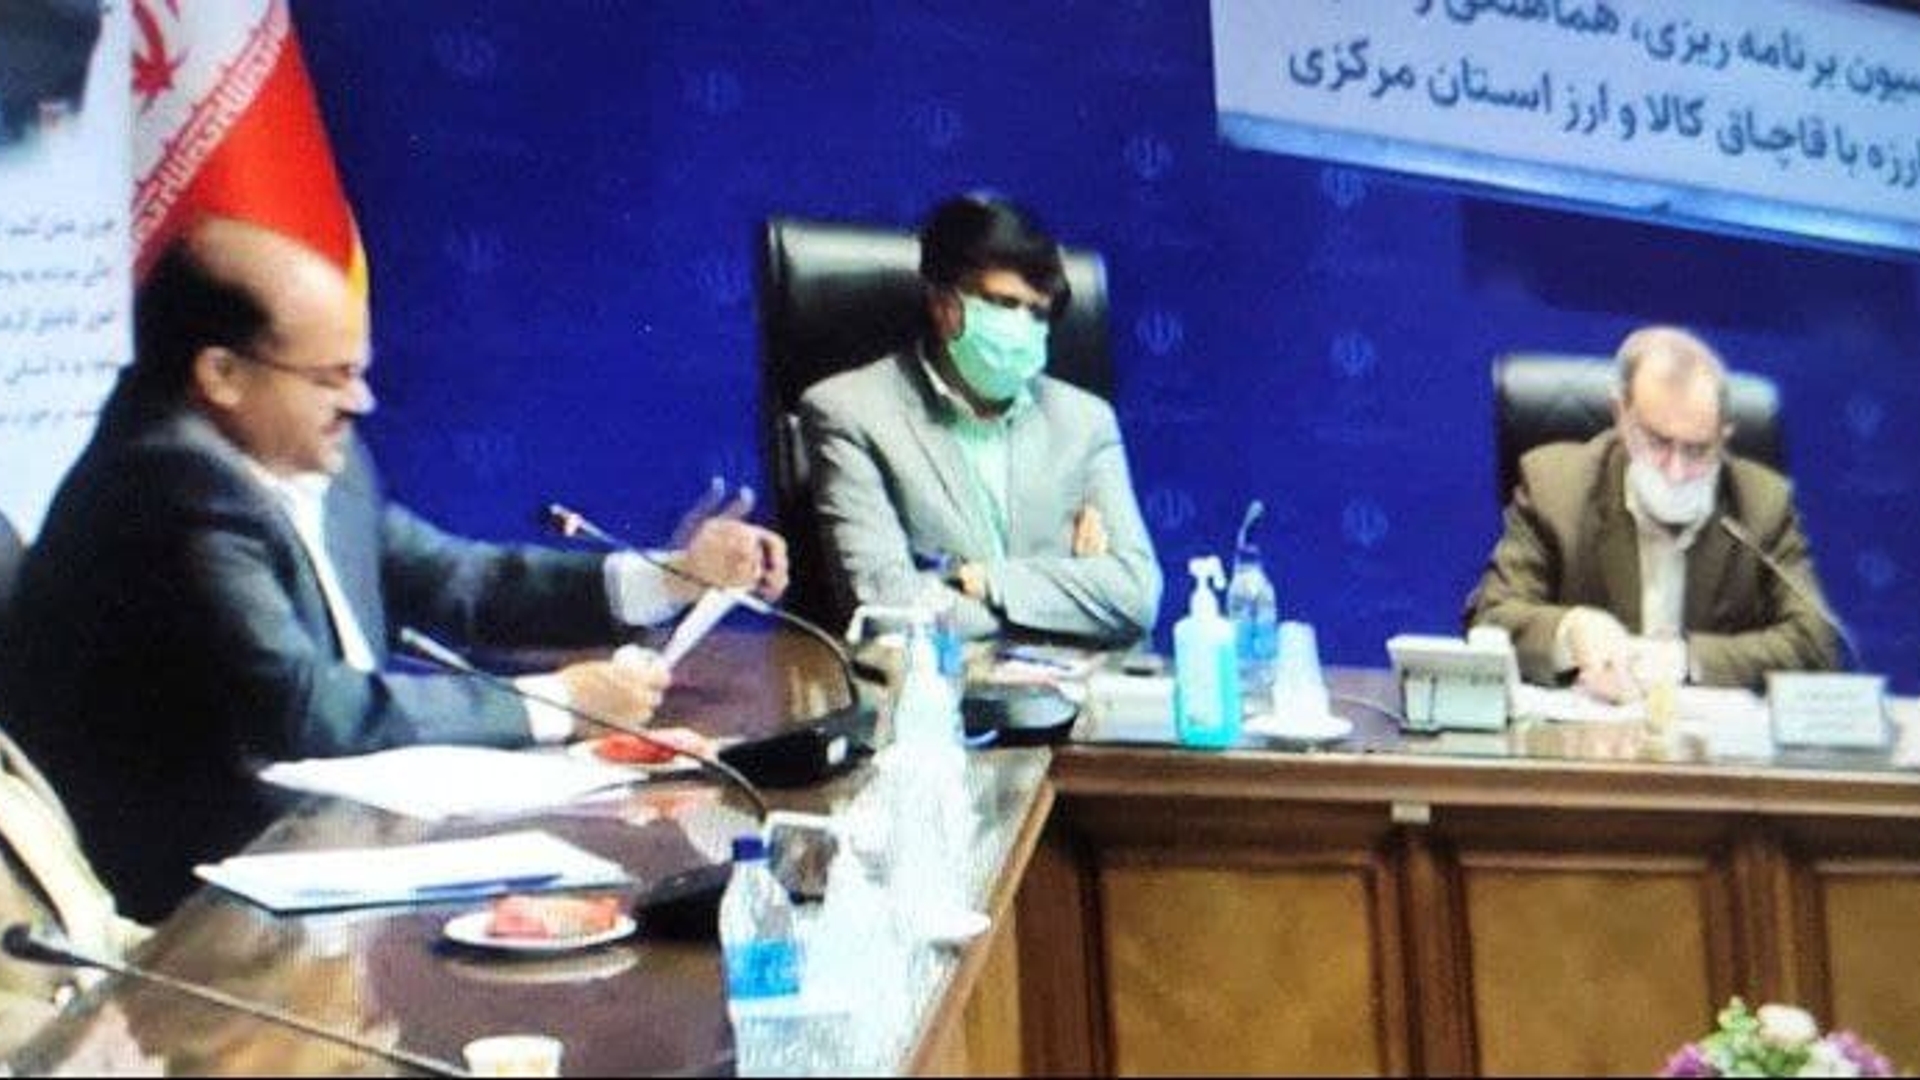 جلسه کمیسیون برنامه ریزی ، هماهنگی و نظارت بر مبارزه با قاچاق کالا و ارز استان مرکزی به صورت ویدئو کنفرانس به ریاست جناب آقای مخلص الائمه